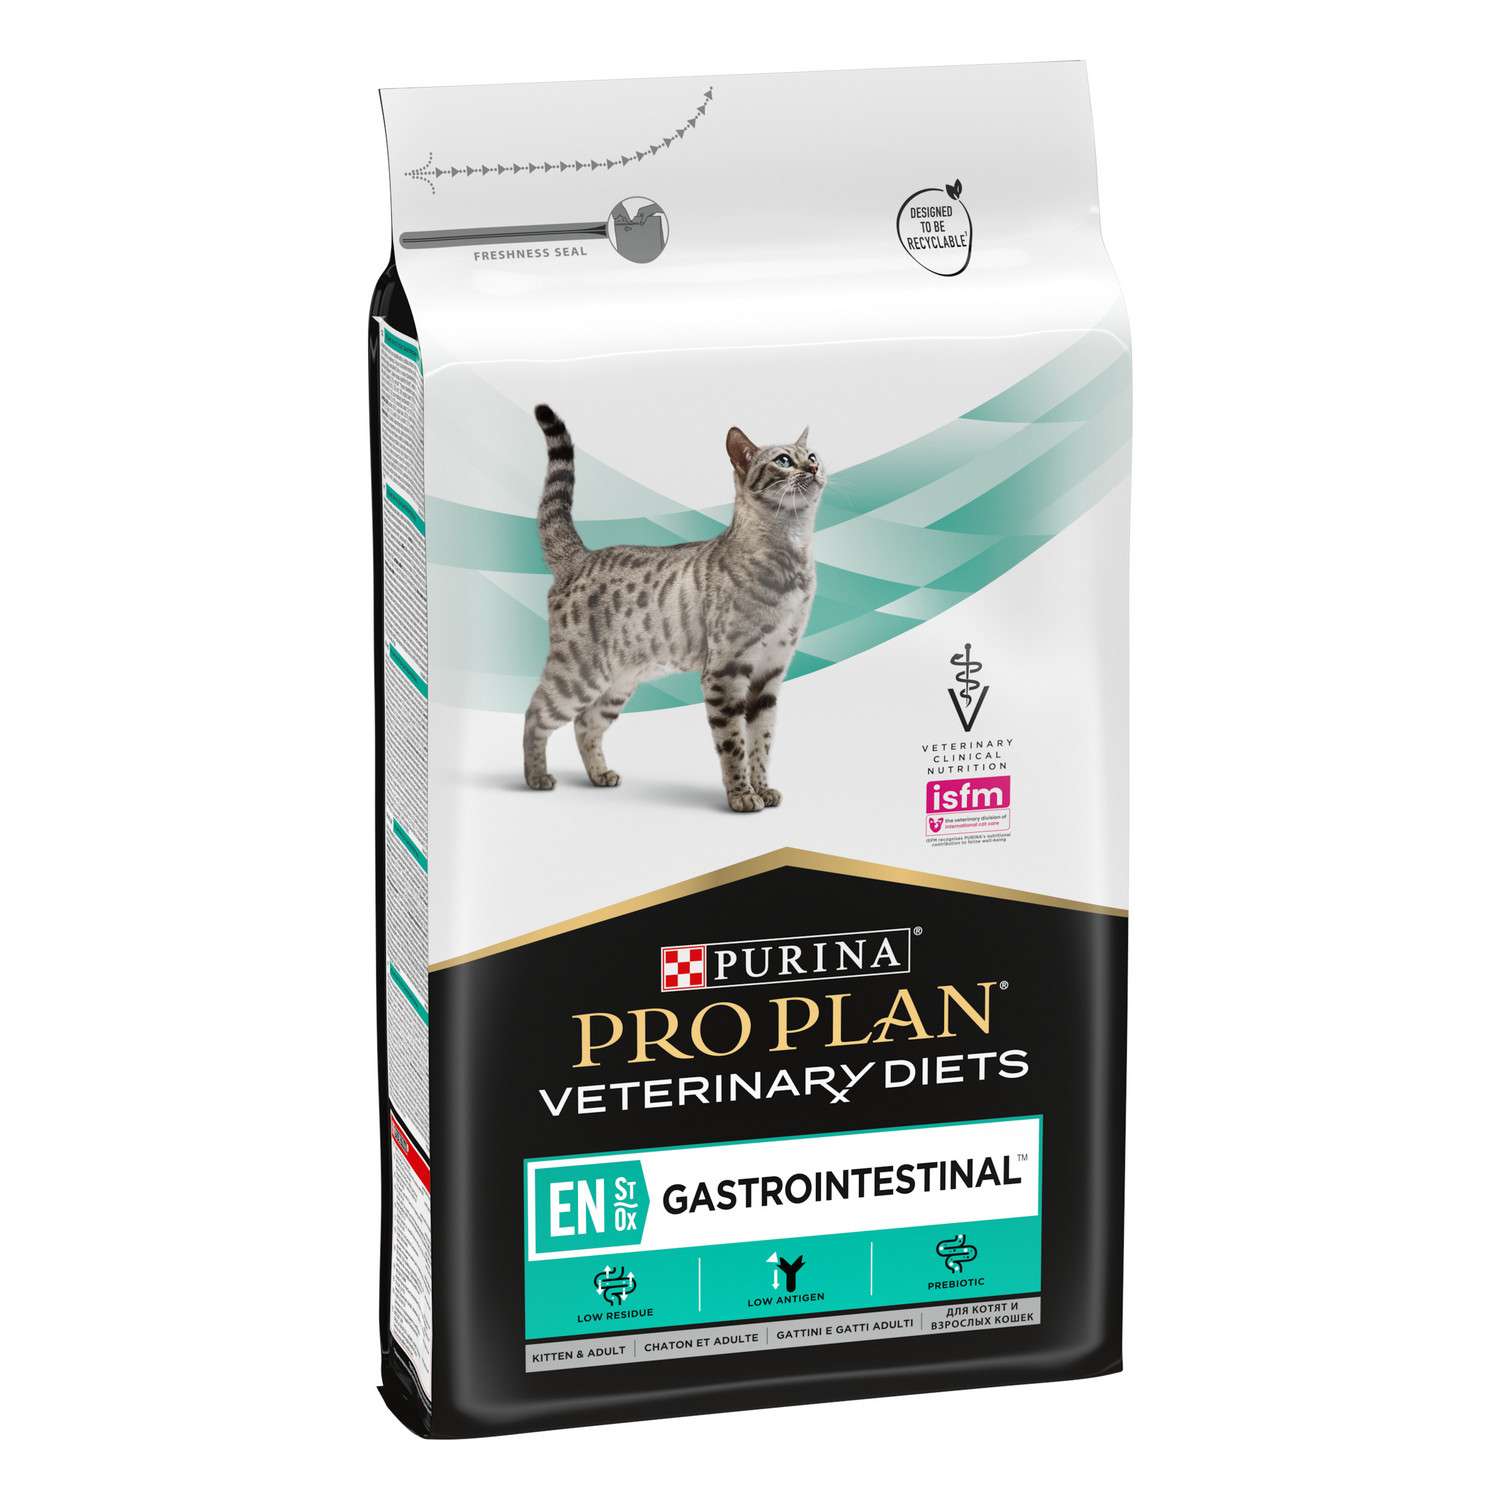 Корм для кошек и котят Purina Pro Plan Veterinary diets EN St/Ox Gastrointestinal для снижения проявлений кишечных расстройств cухой 5кг - фото 4